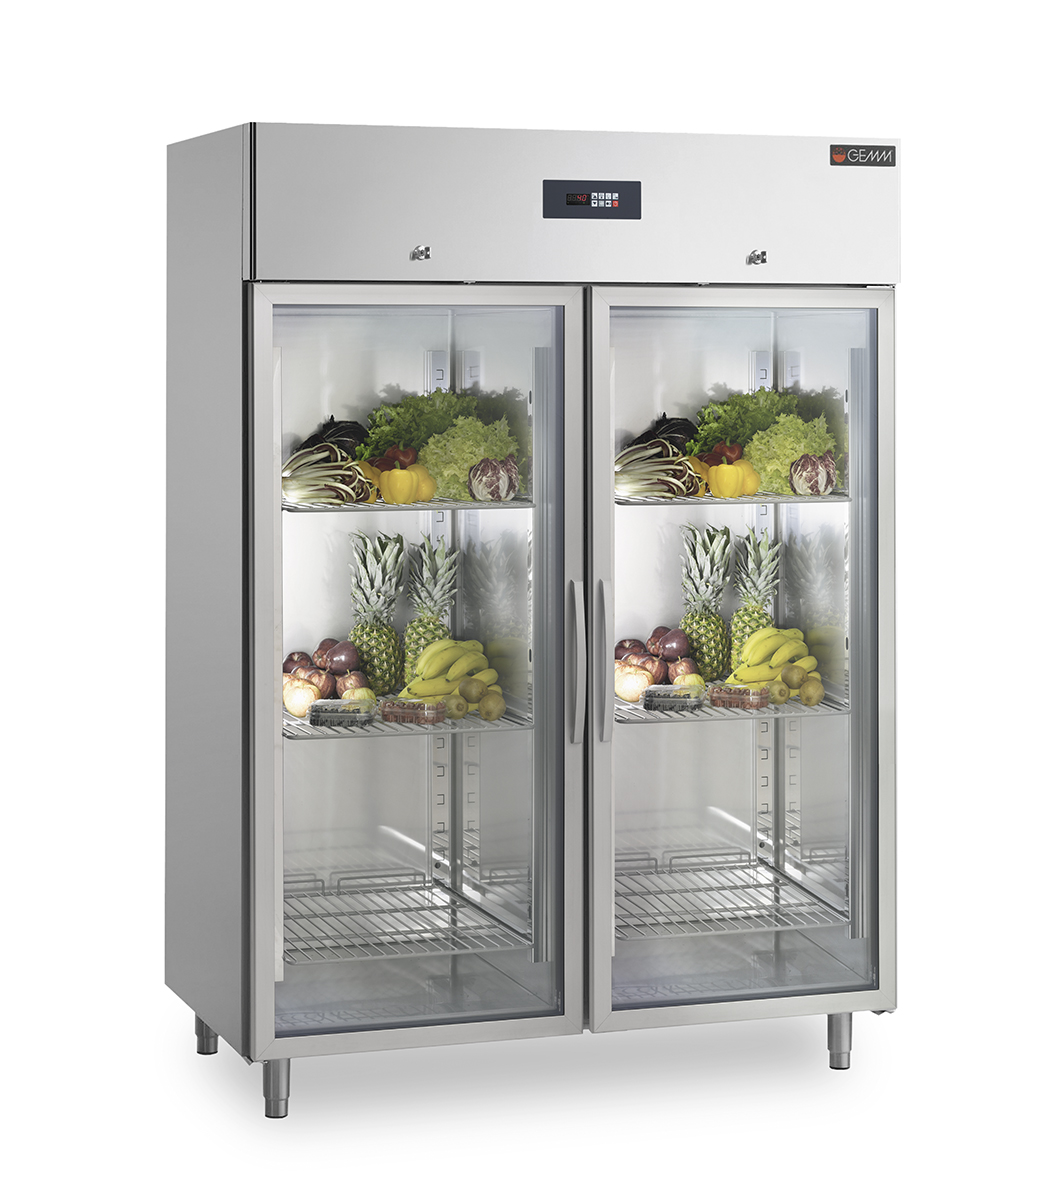 Gemm холодильное оборудование